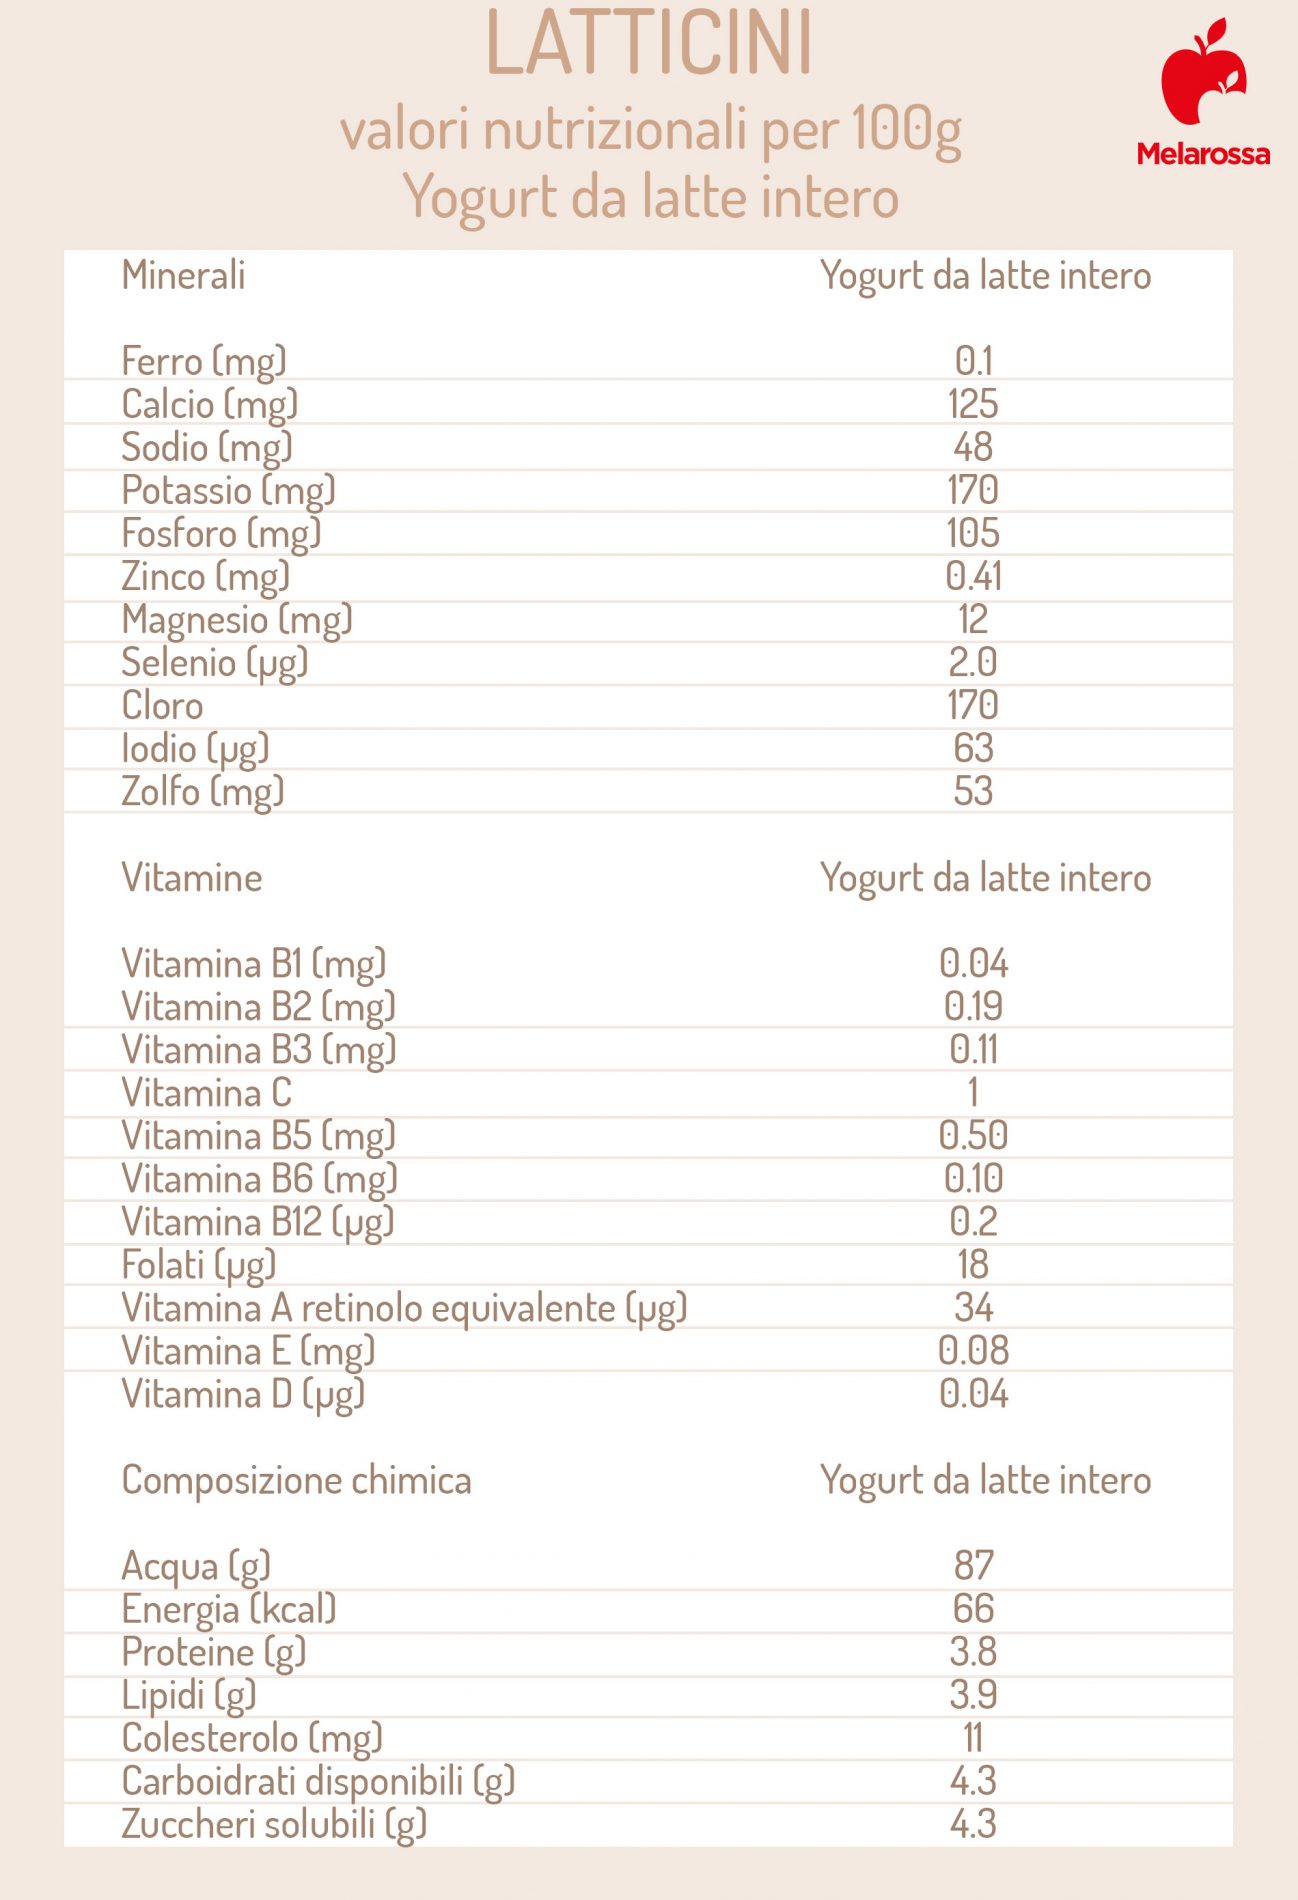 latticini: valori nutrizionali dello yogurt